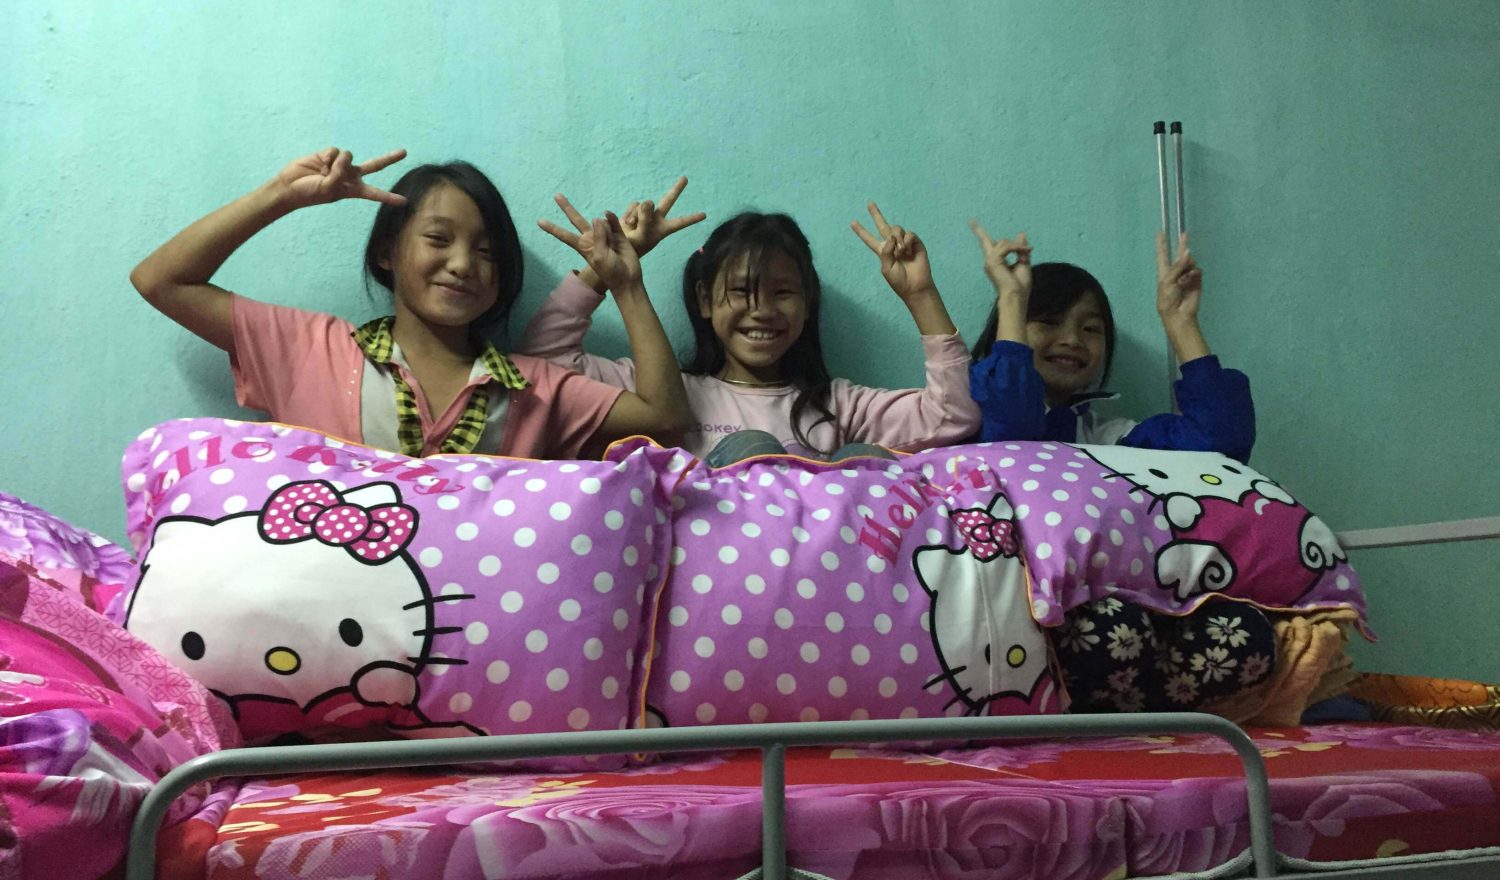 Bild der Mädchen aus der LOAN-Stiftung mit Kissen in der Hand